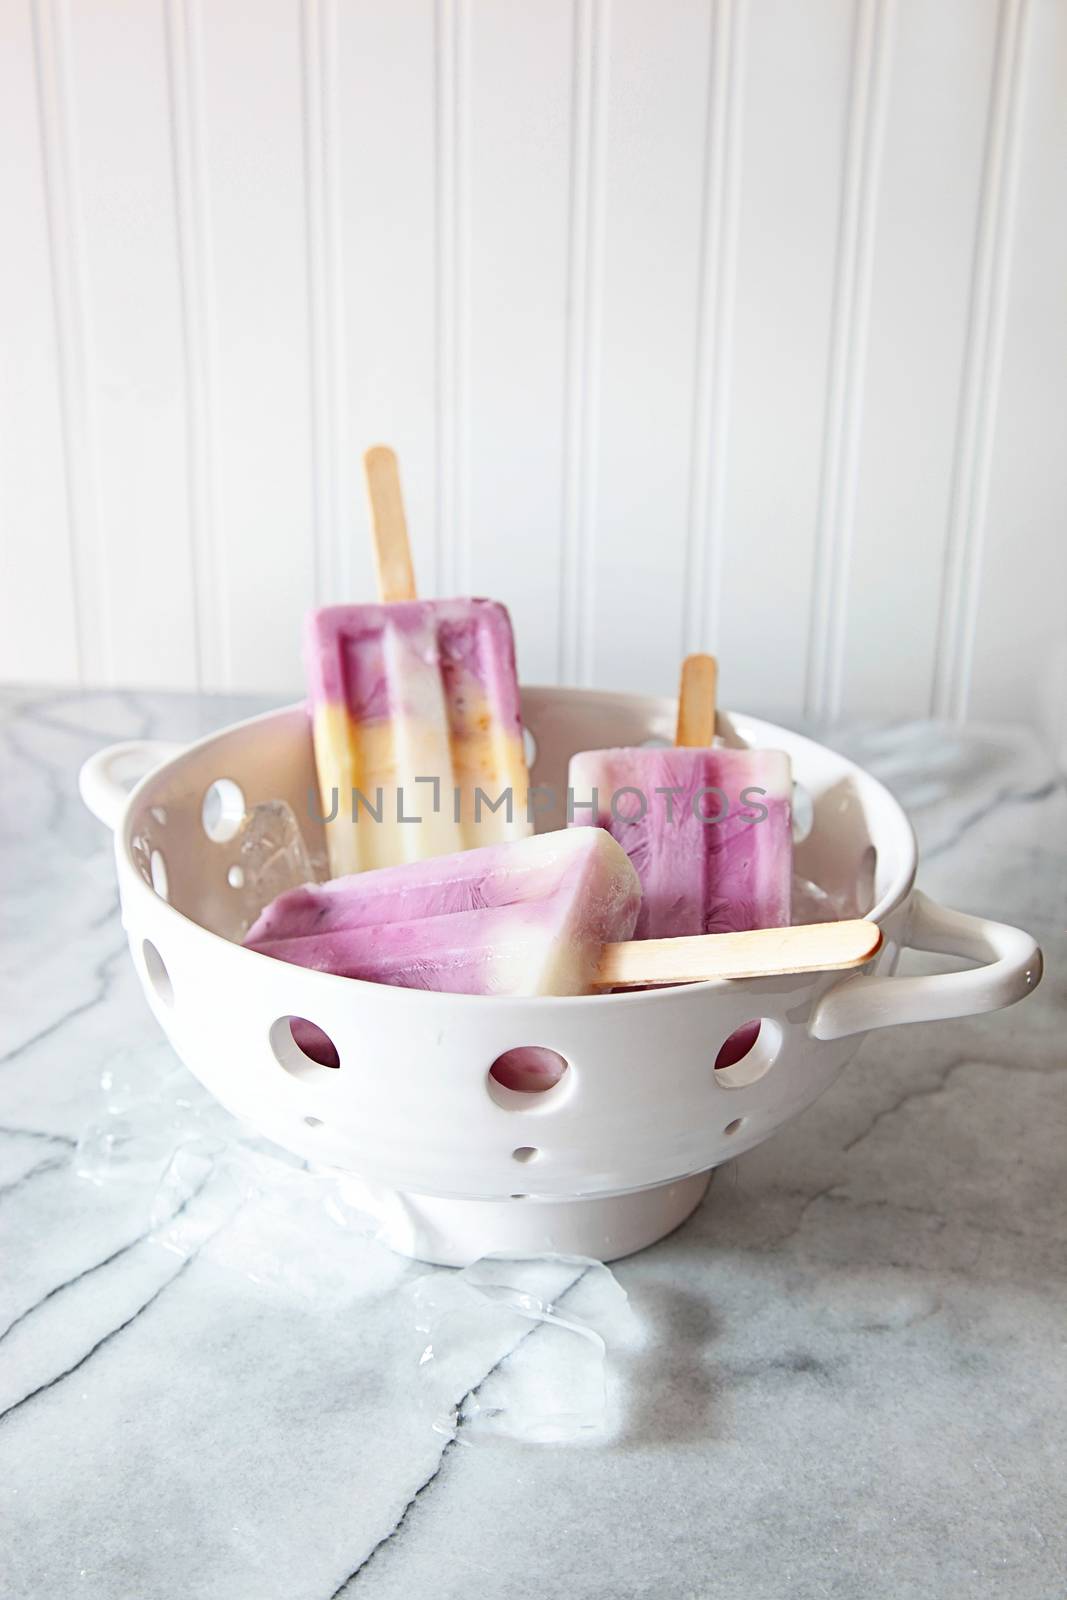 Frozen yogurt popsicles for summer by Sandralise